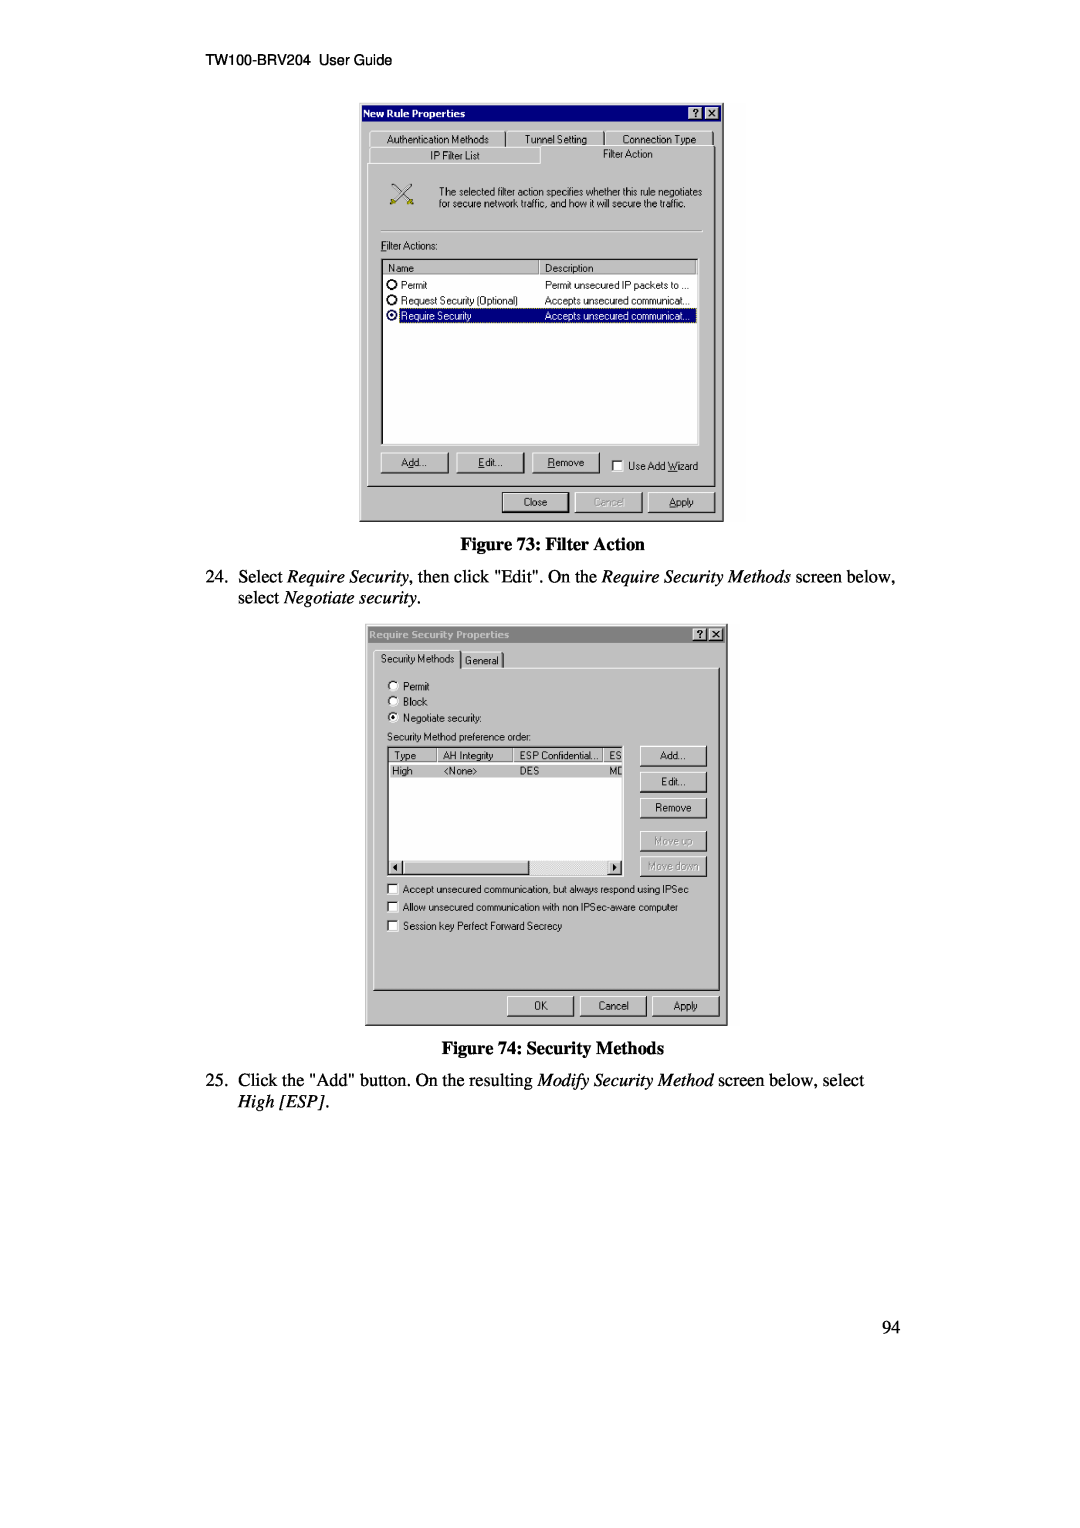 TRENDnet BRV204 manual Filter Action, Security Methods 